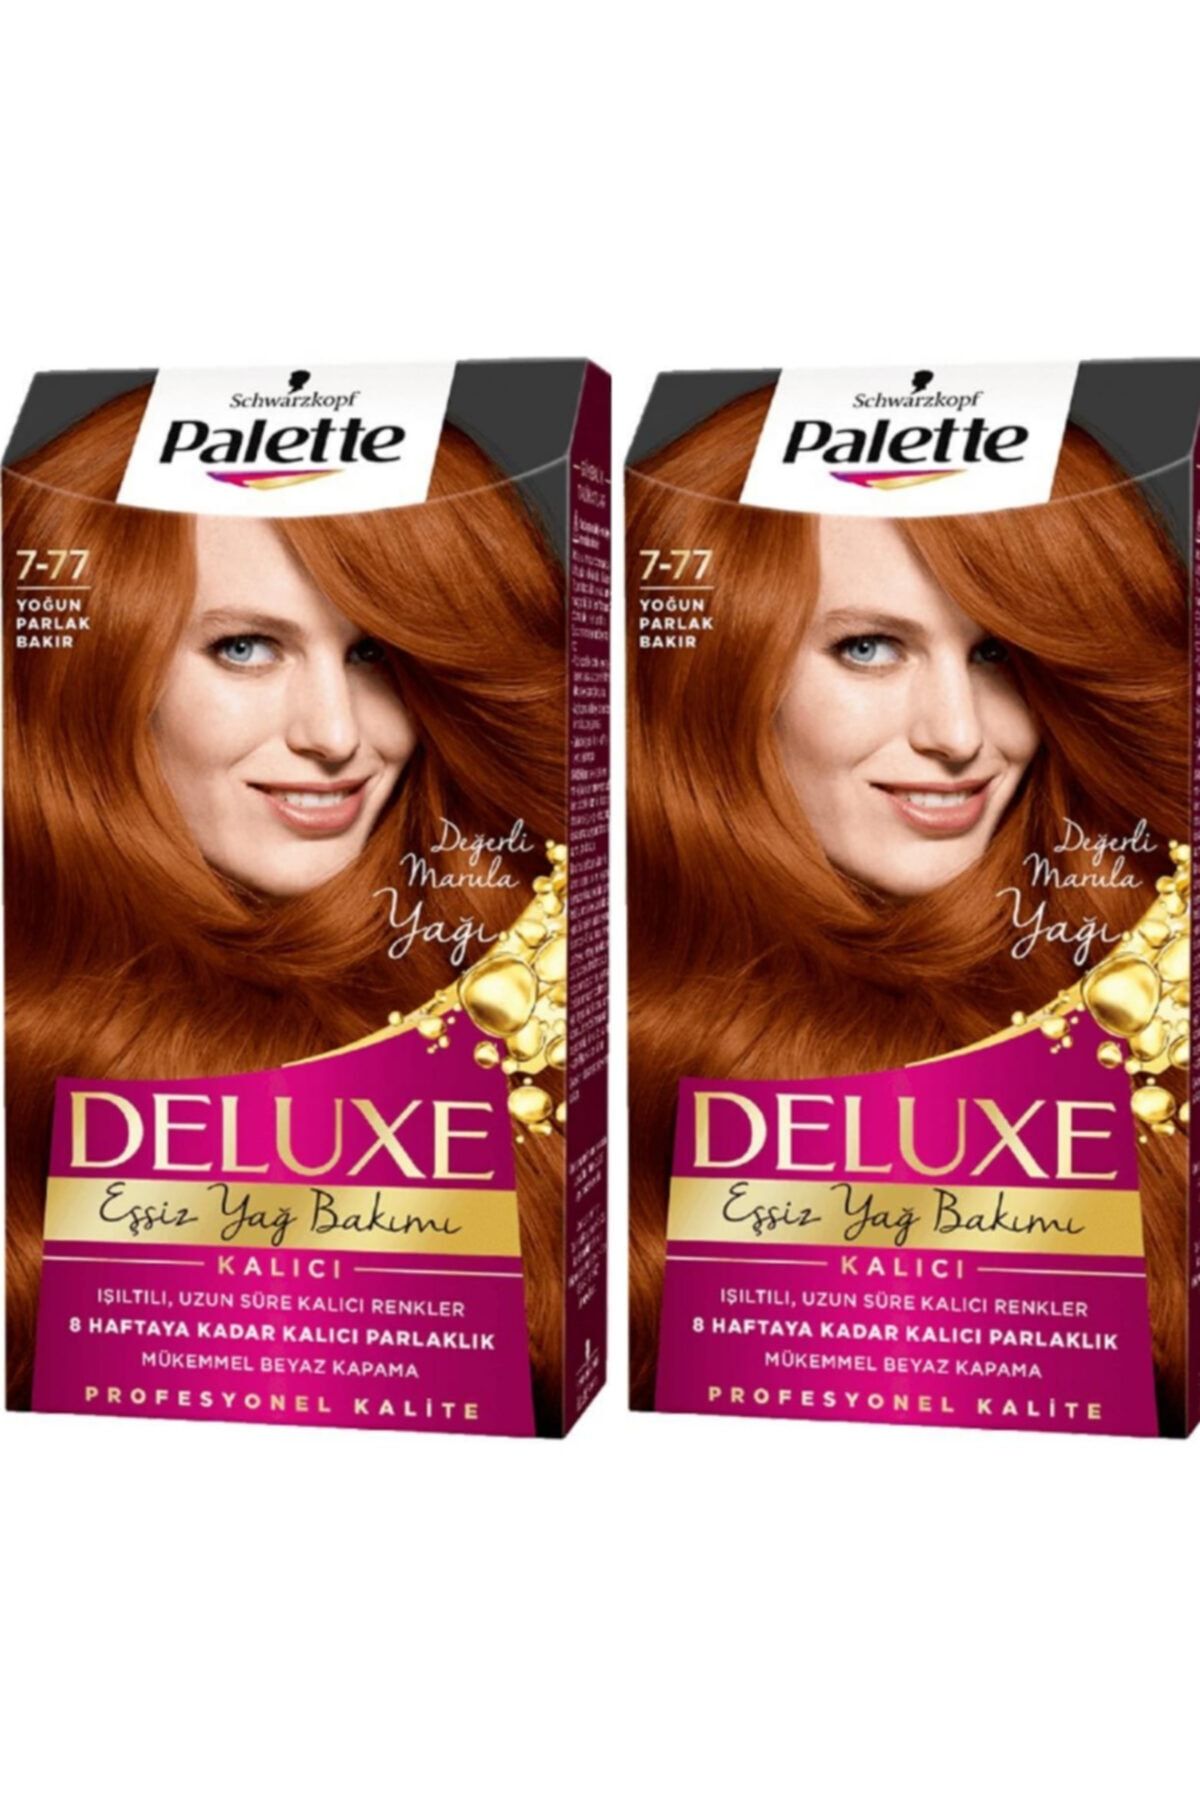 Palette Deluxe Saç Boyası 7-77 Yoğun Parlak Bakır 2li